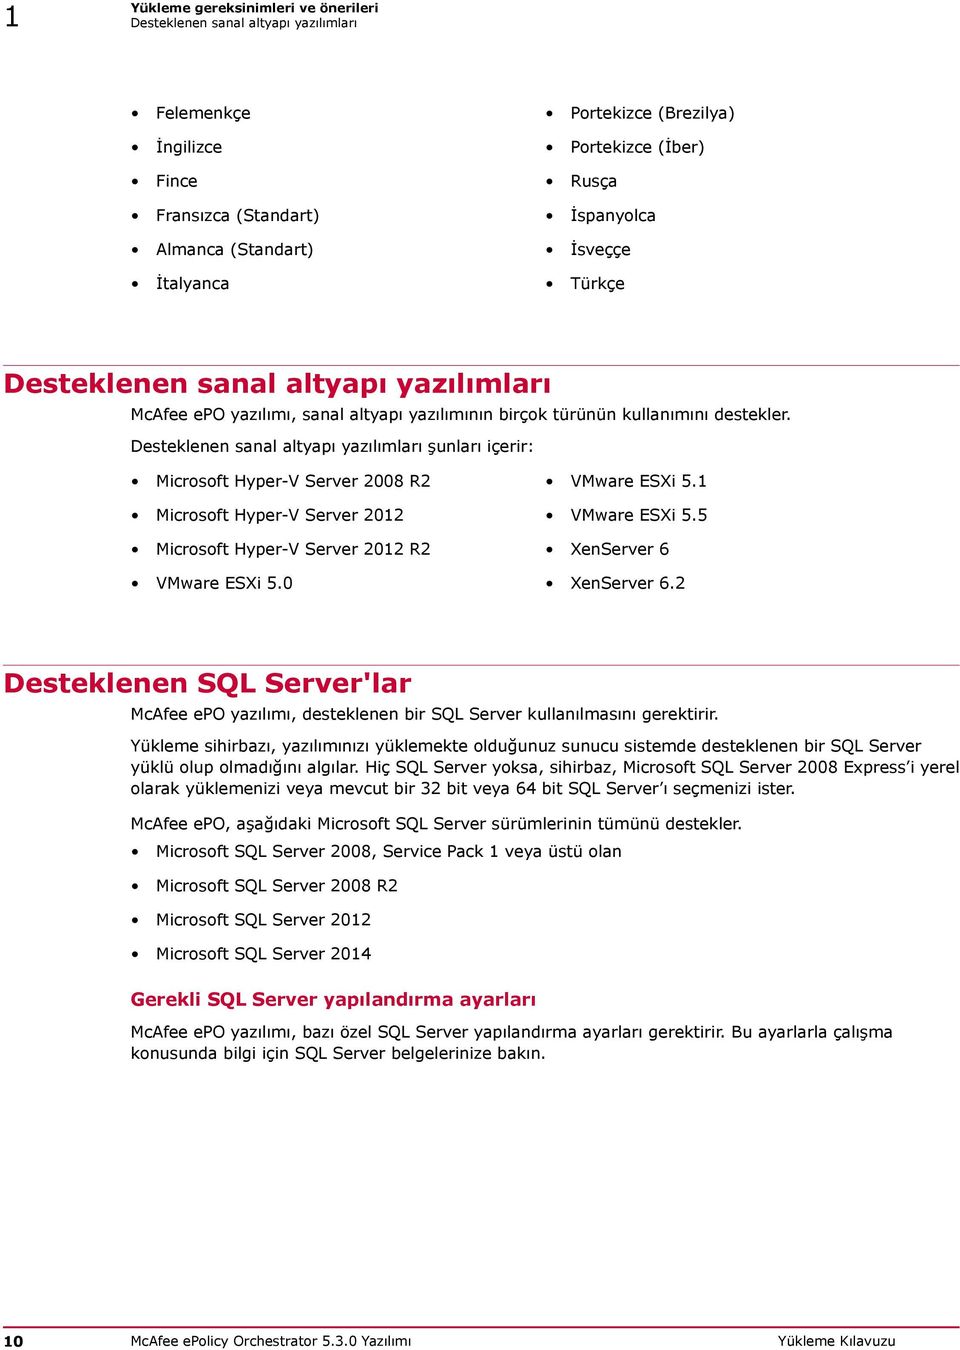 Desteklenen sanal altyapı yazılımları şunları içerir: Microsoft Hyper-V Server 2008 R2 VMware ESXi 5.1 Microsoft Hyper-V Server 2012 VMware ESXi 5.